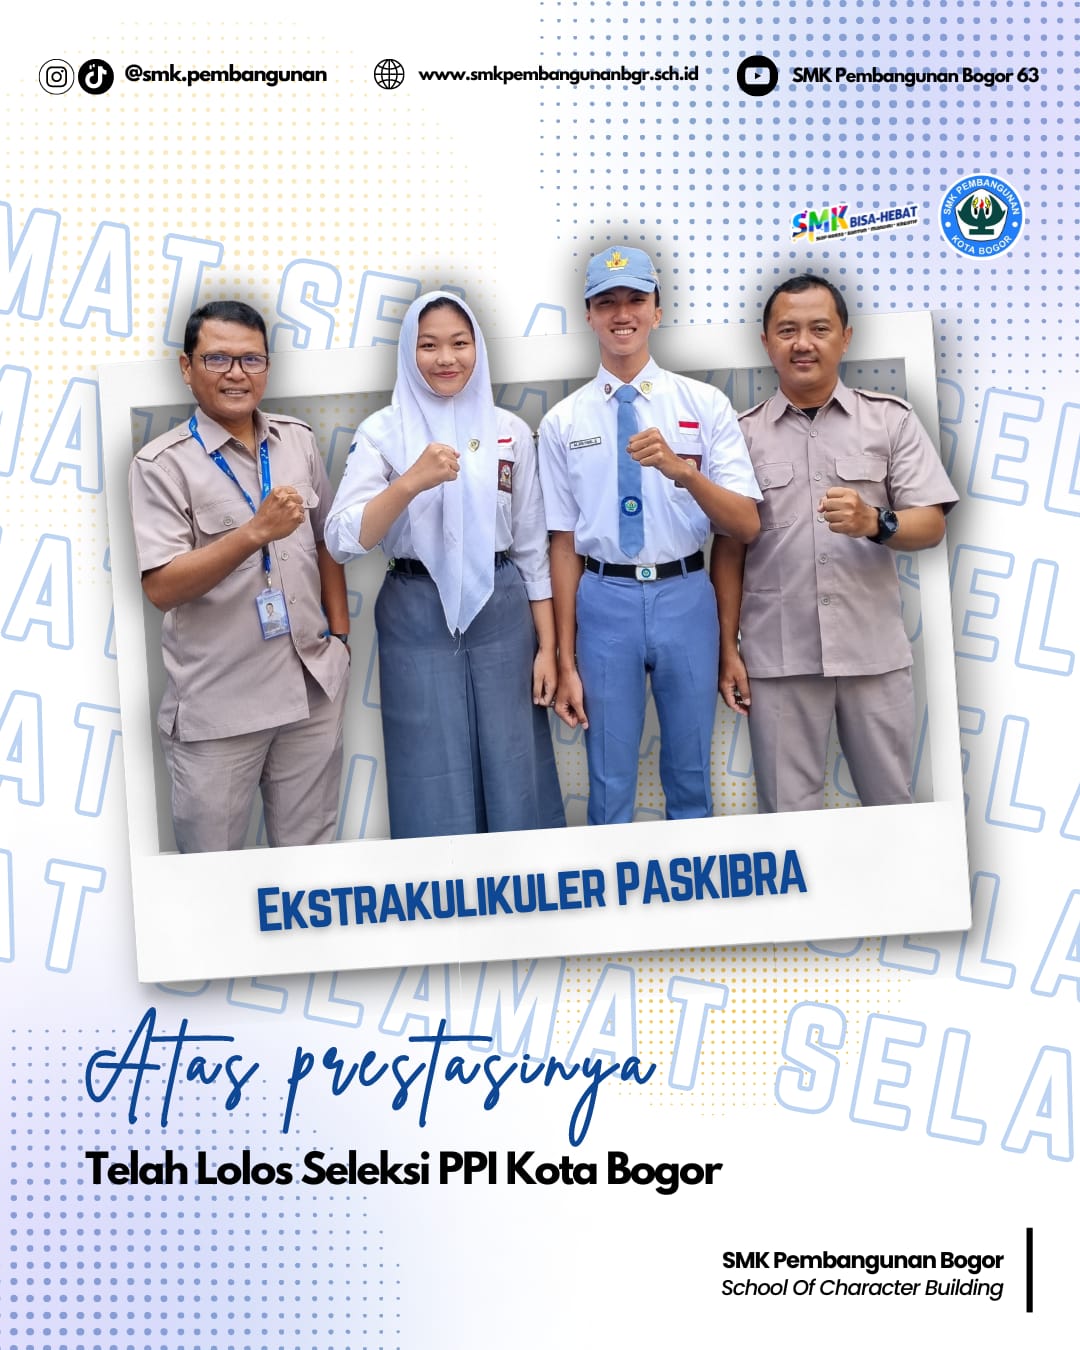 Prestasi Ekstrakulikuler Paskibra SMK Pembangunan Bogor